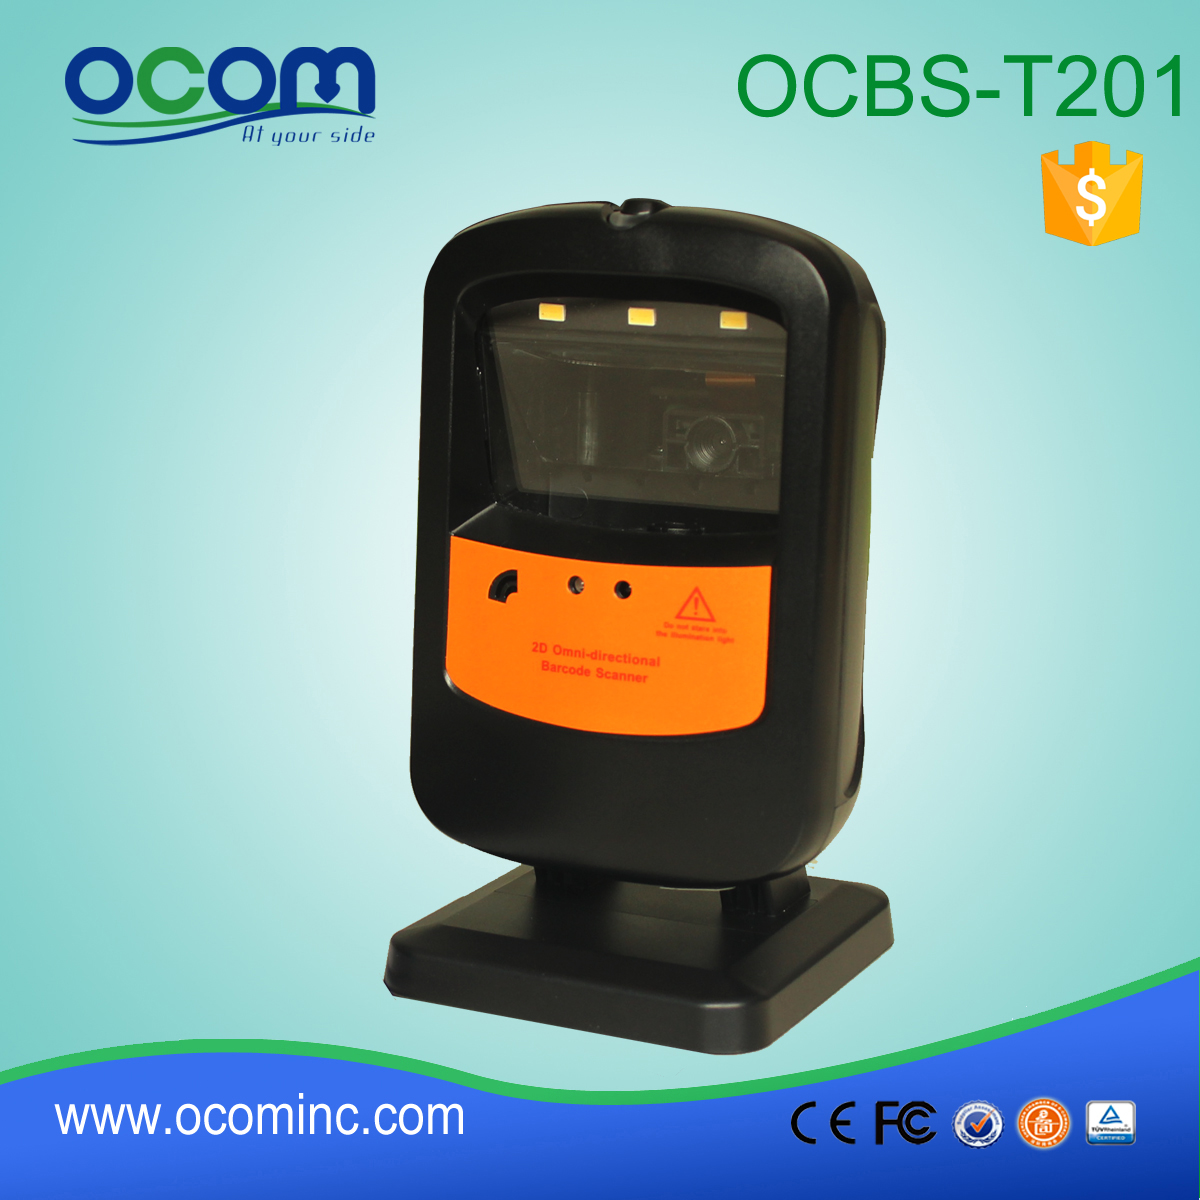 OCB-T201: tavolo fornitore barcode scanner top, scanner di codici a barre piccolo